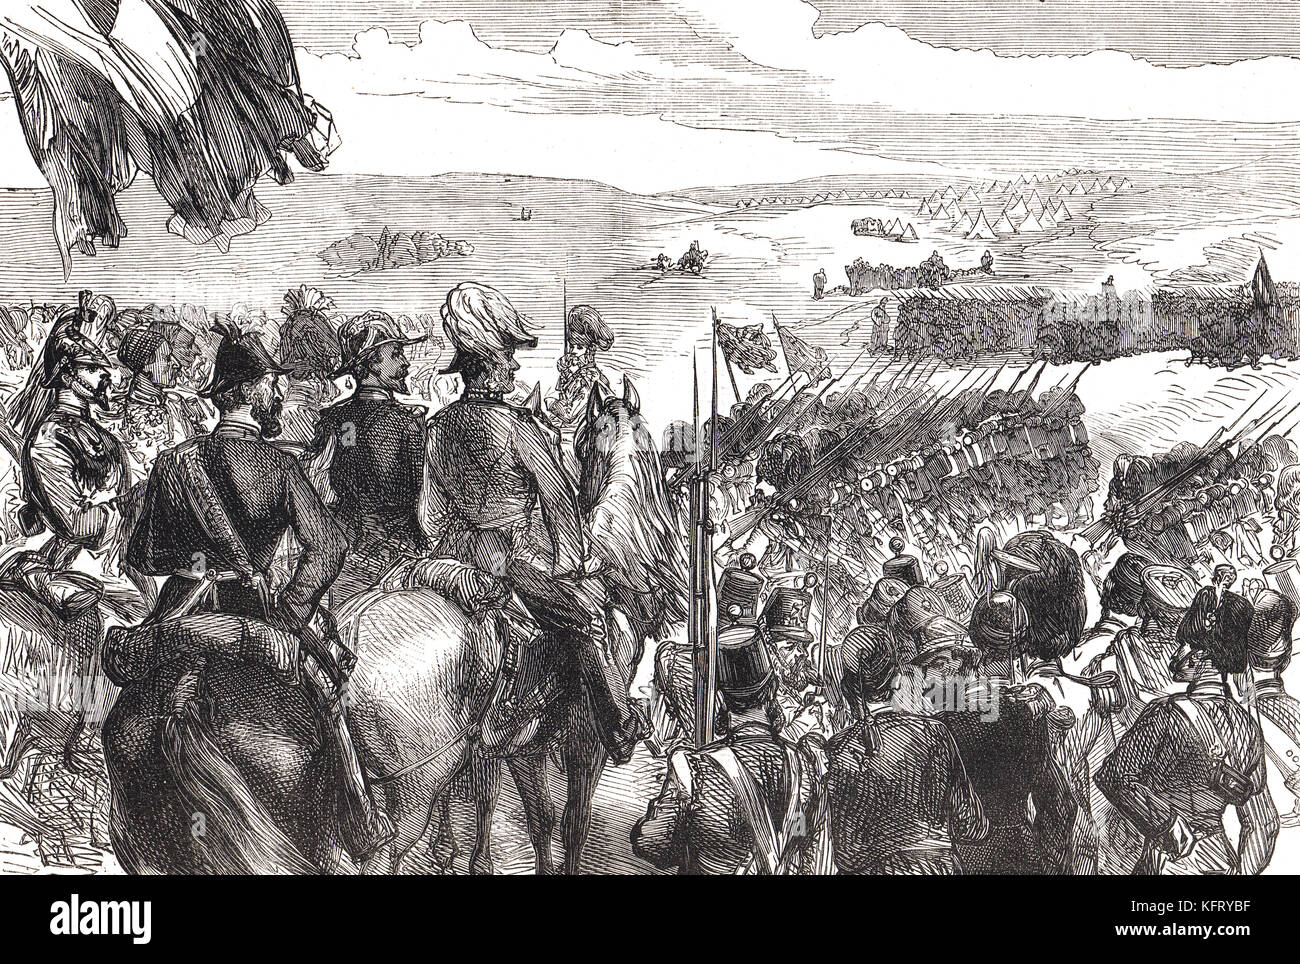 Die März Vergangenheit, Schlacht von kinburn, 1855. eine kombinierte Bodenwert- naval Engagement während des Krimkrieges Stockfoto